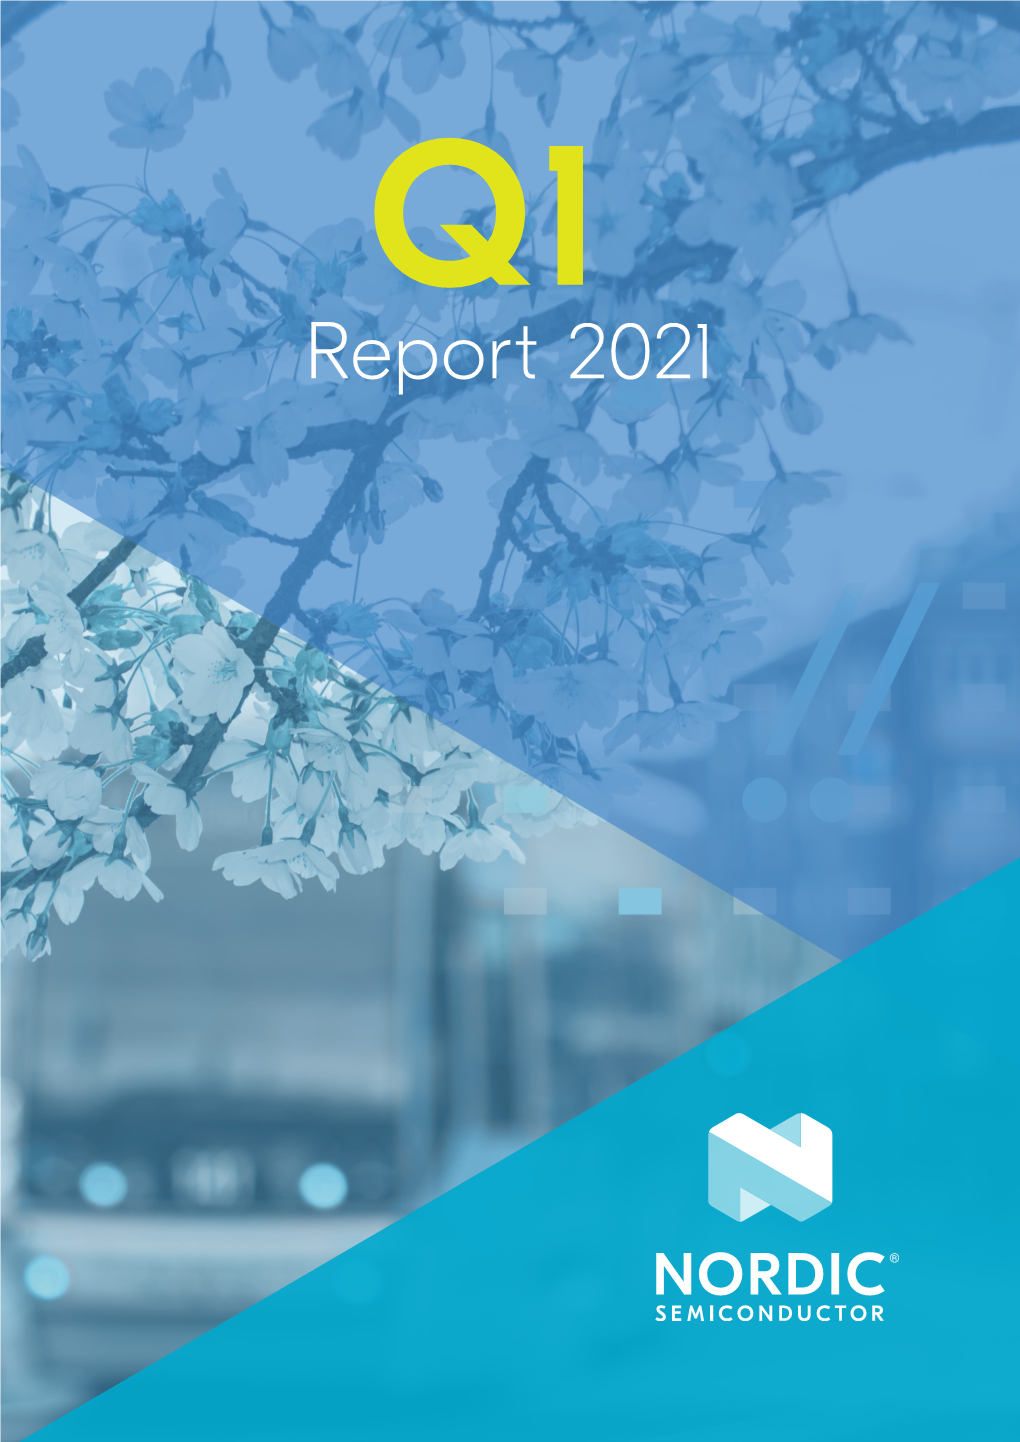 Report 2021 Content